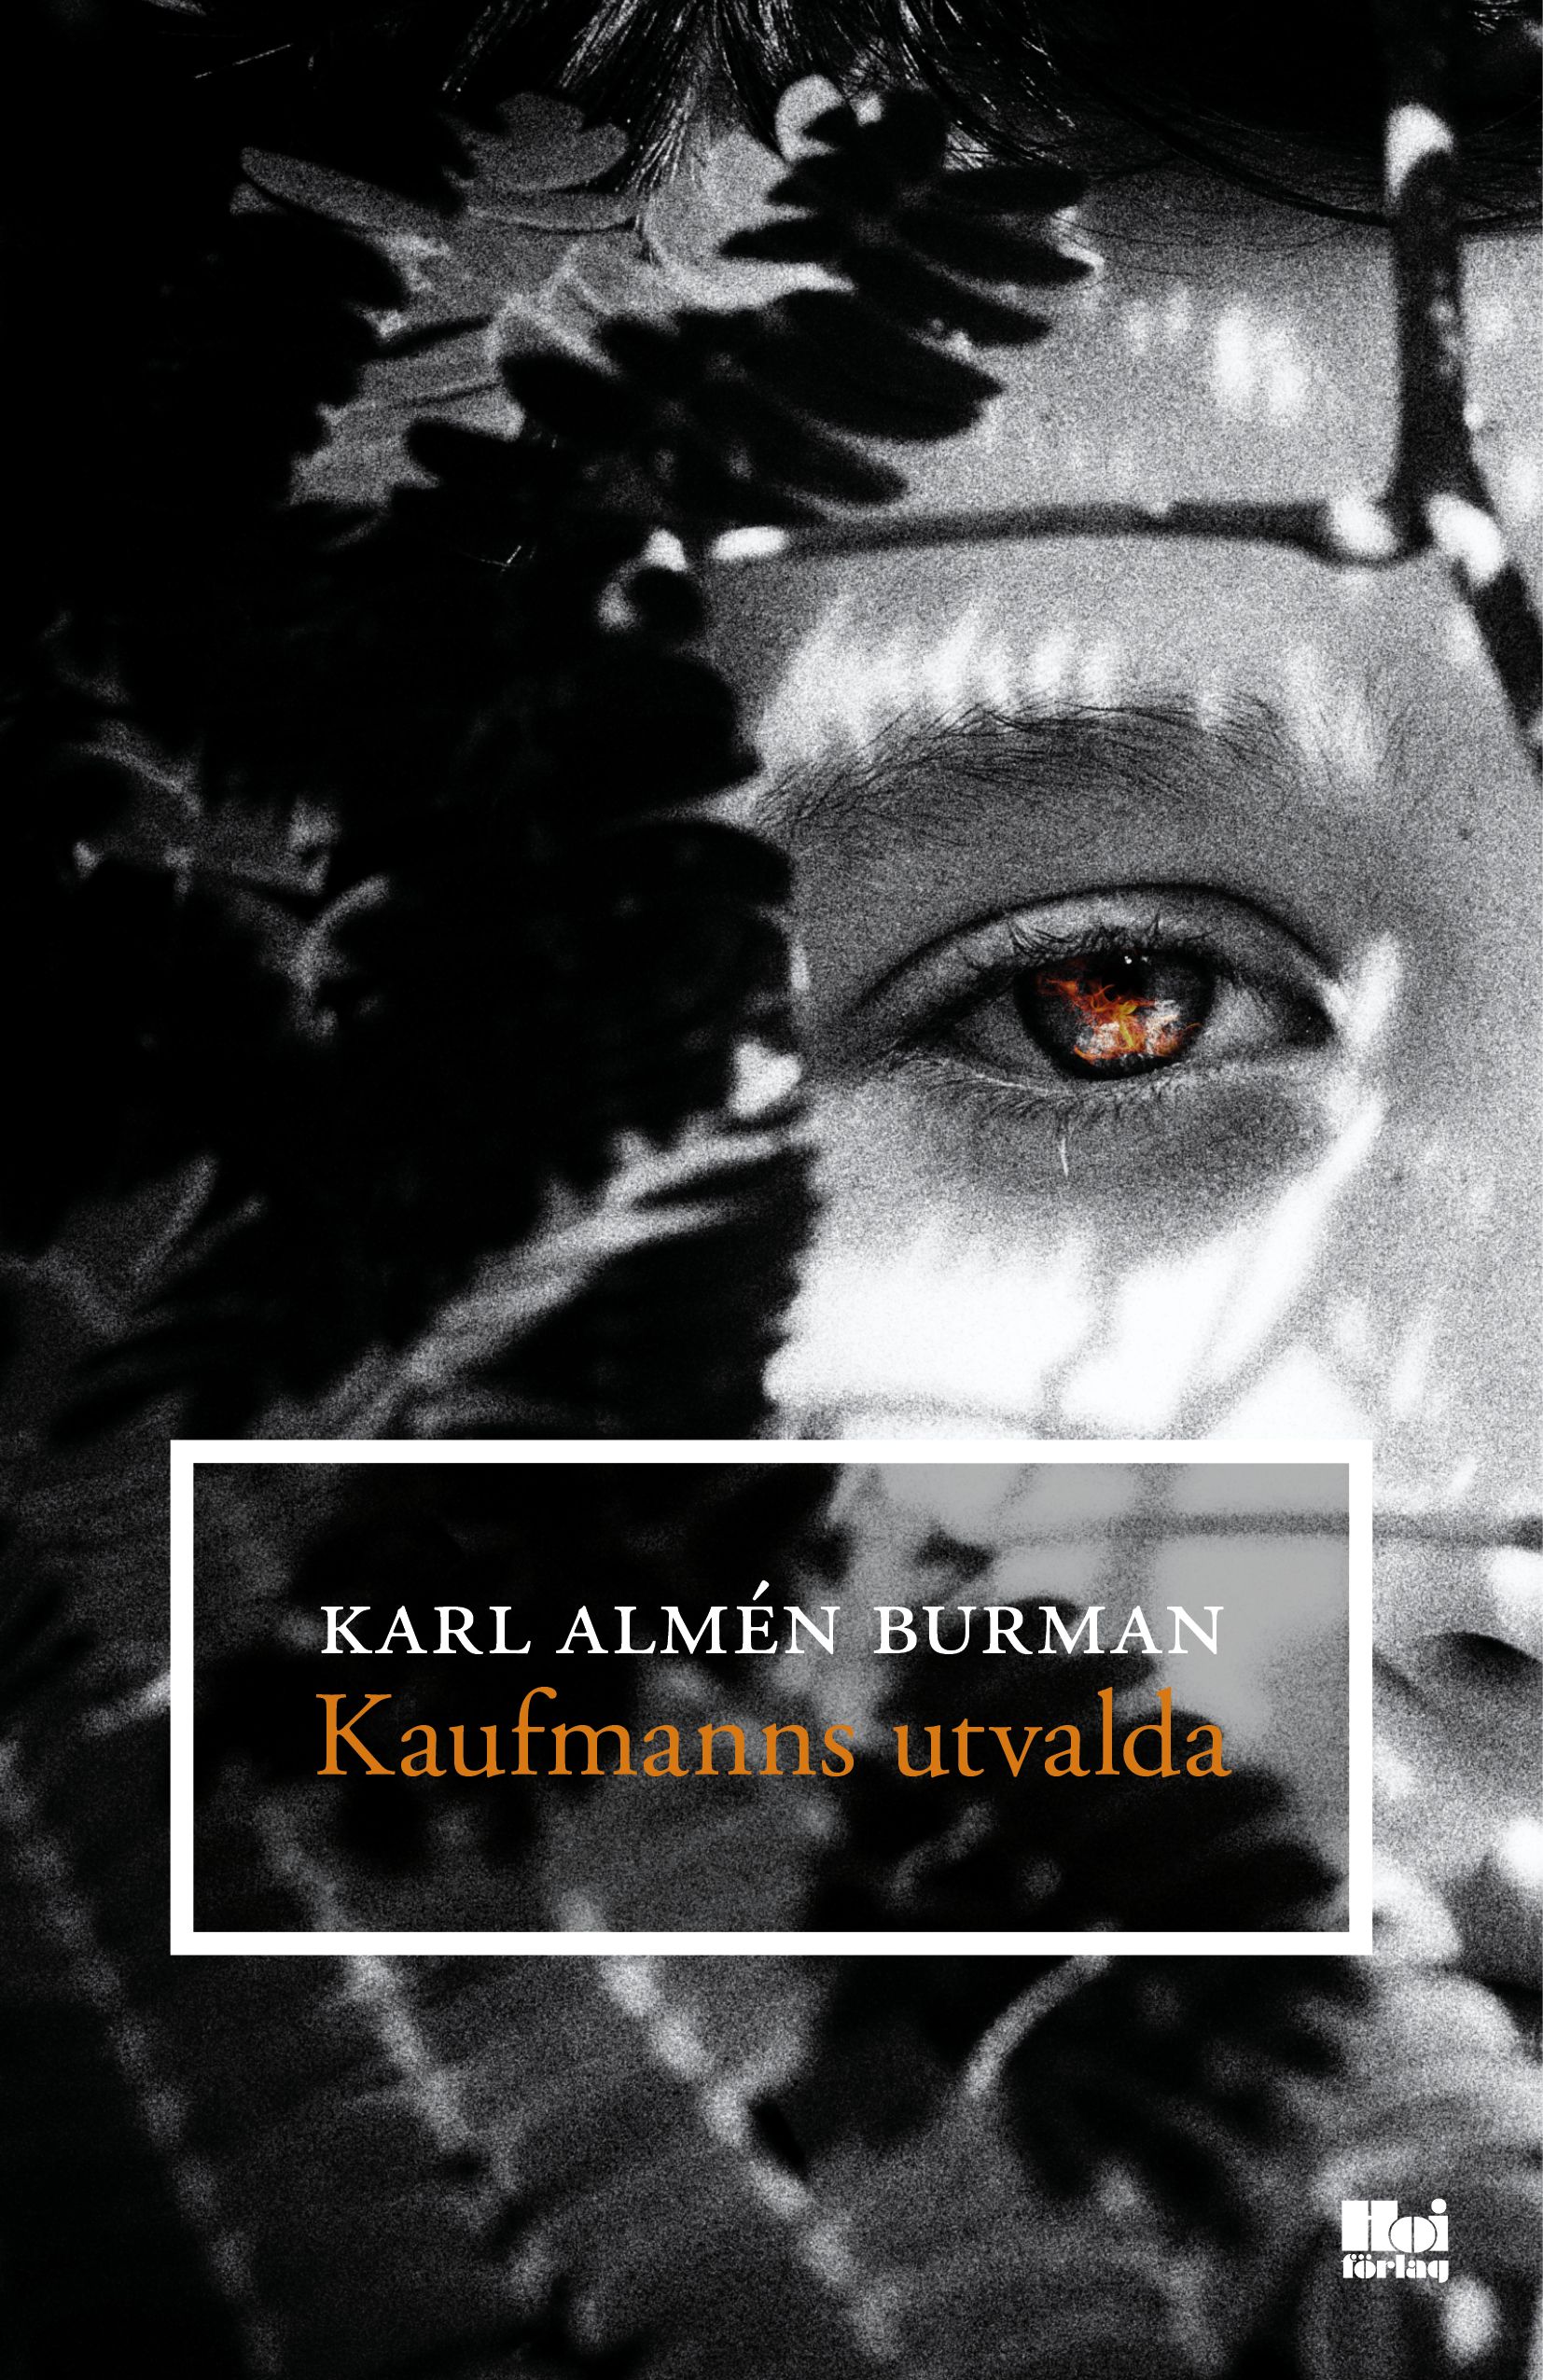 Kaufmanns utvalda, e-bog af Karl Almén Burman